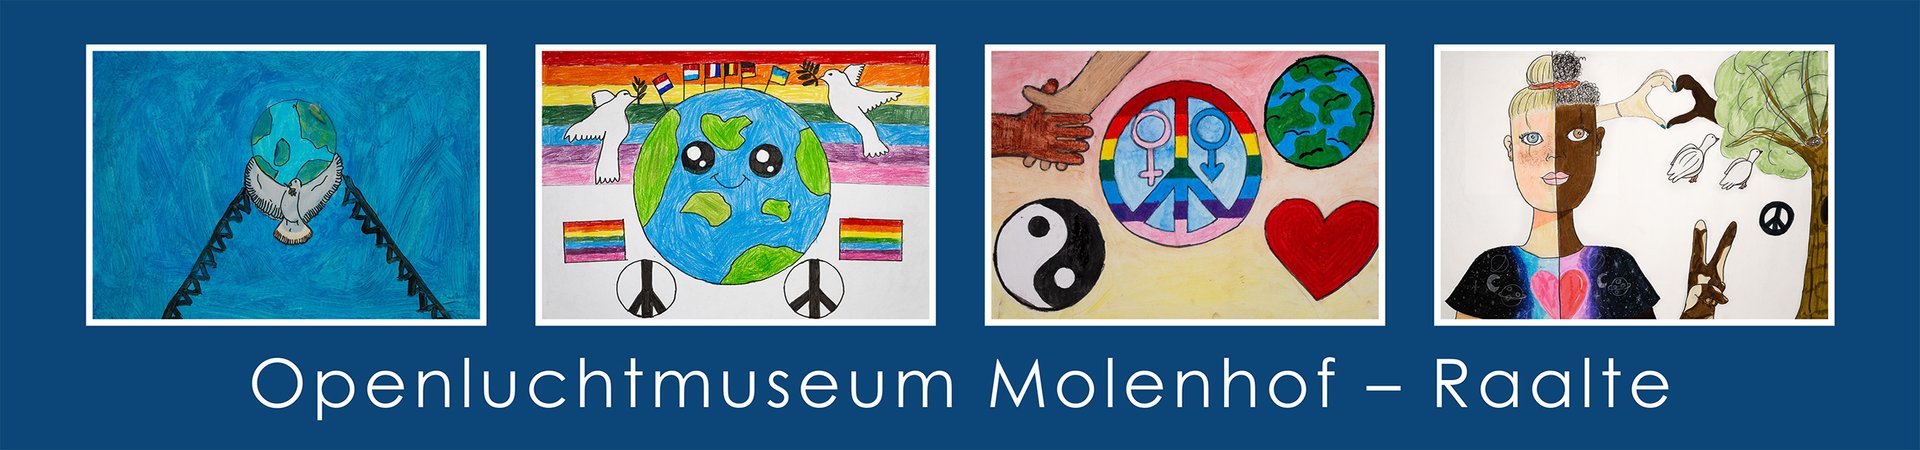 Tekeningen van de vier winnaars van de tekenwedstrijd in het openluchtmuseum Molenhof.